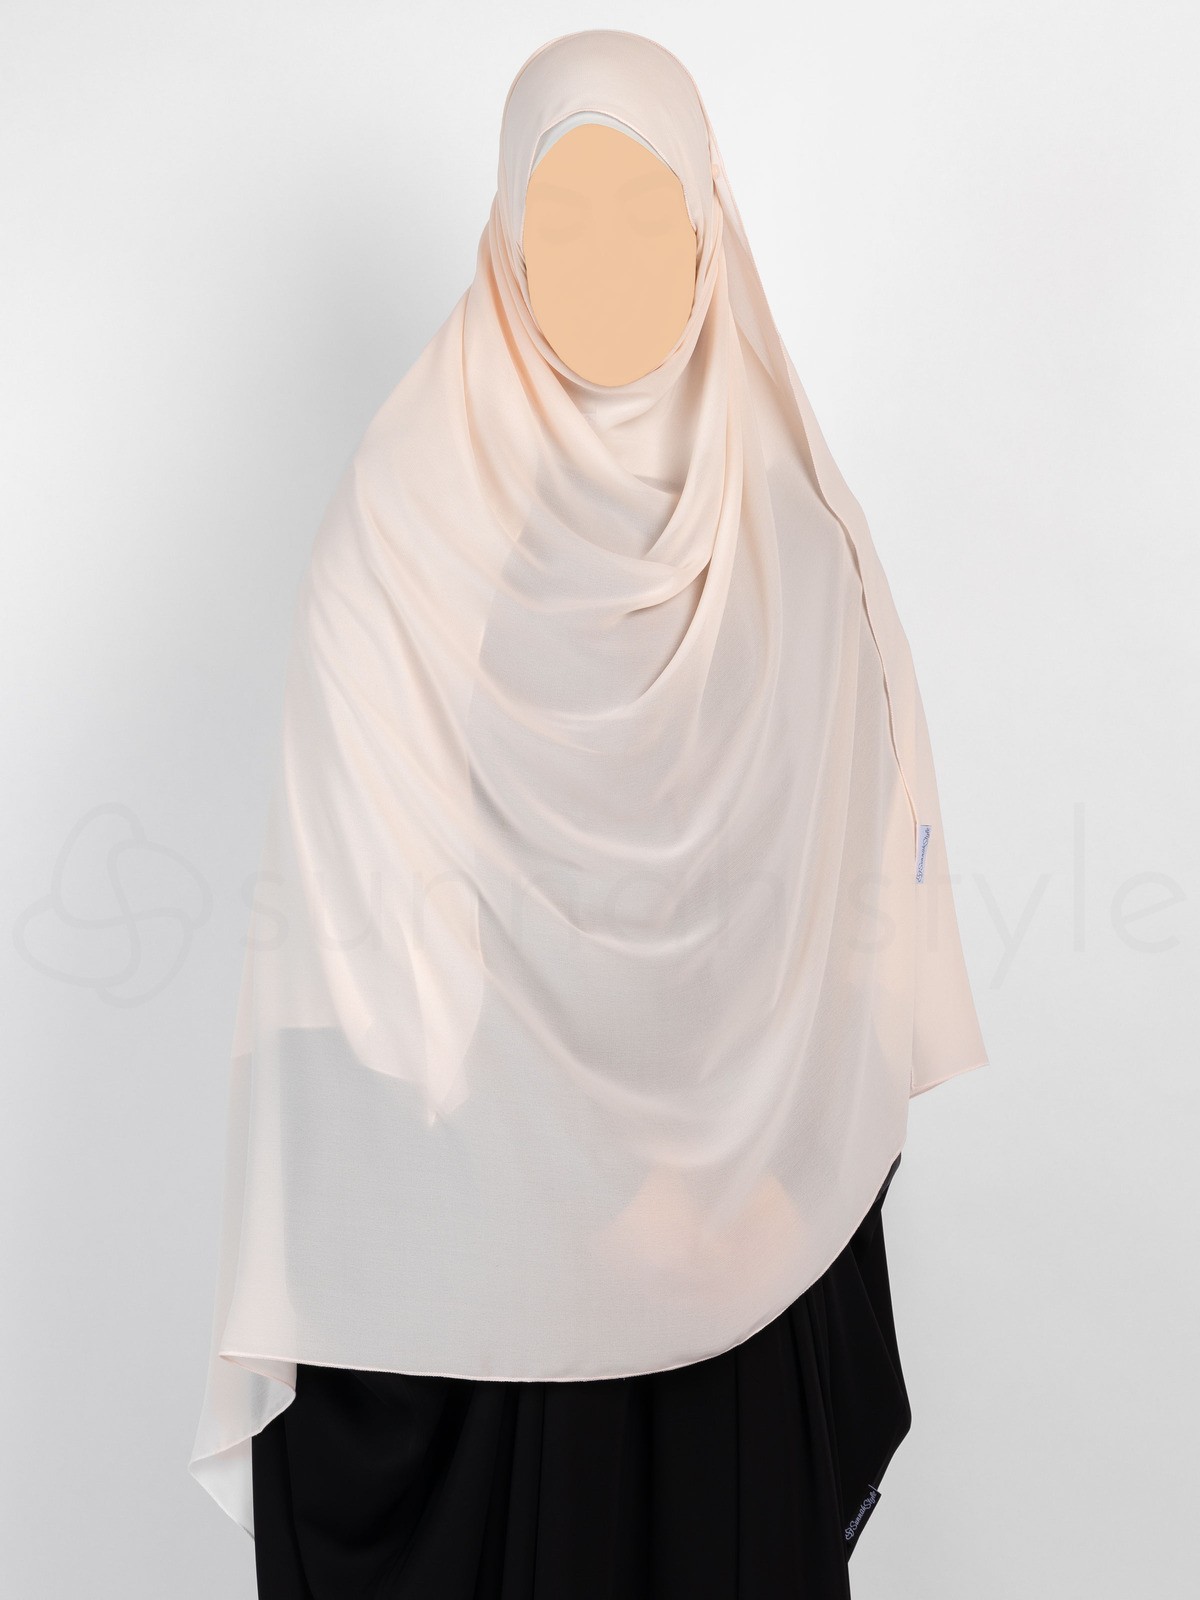 Sunnah Style - Essentials Shayla (Chiffon) - XL (Creamy Peach)